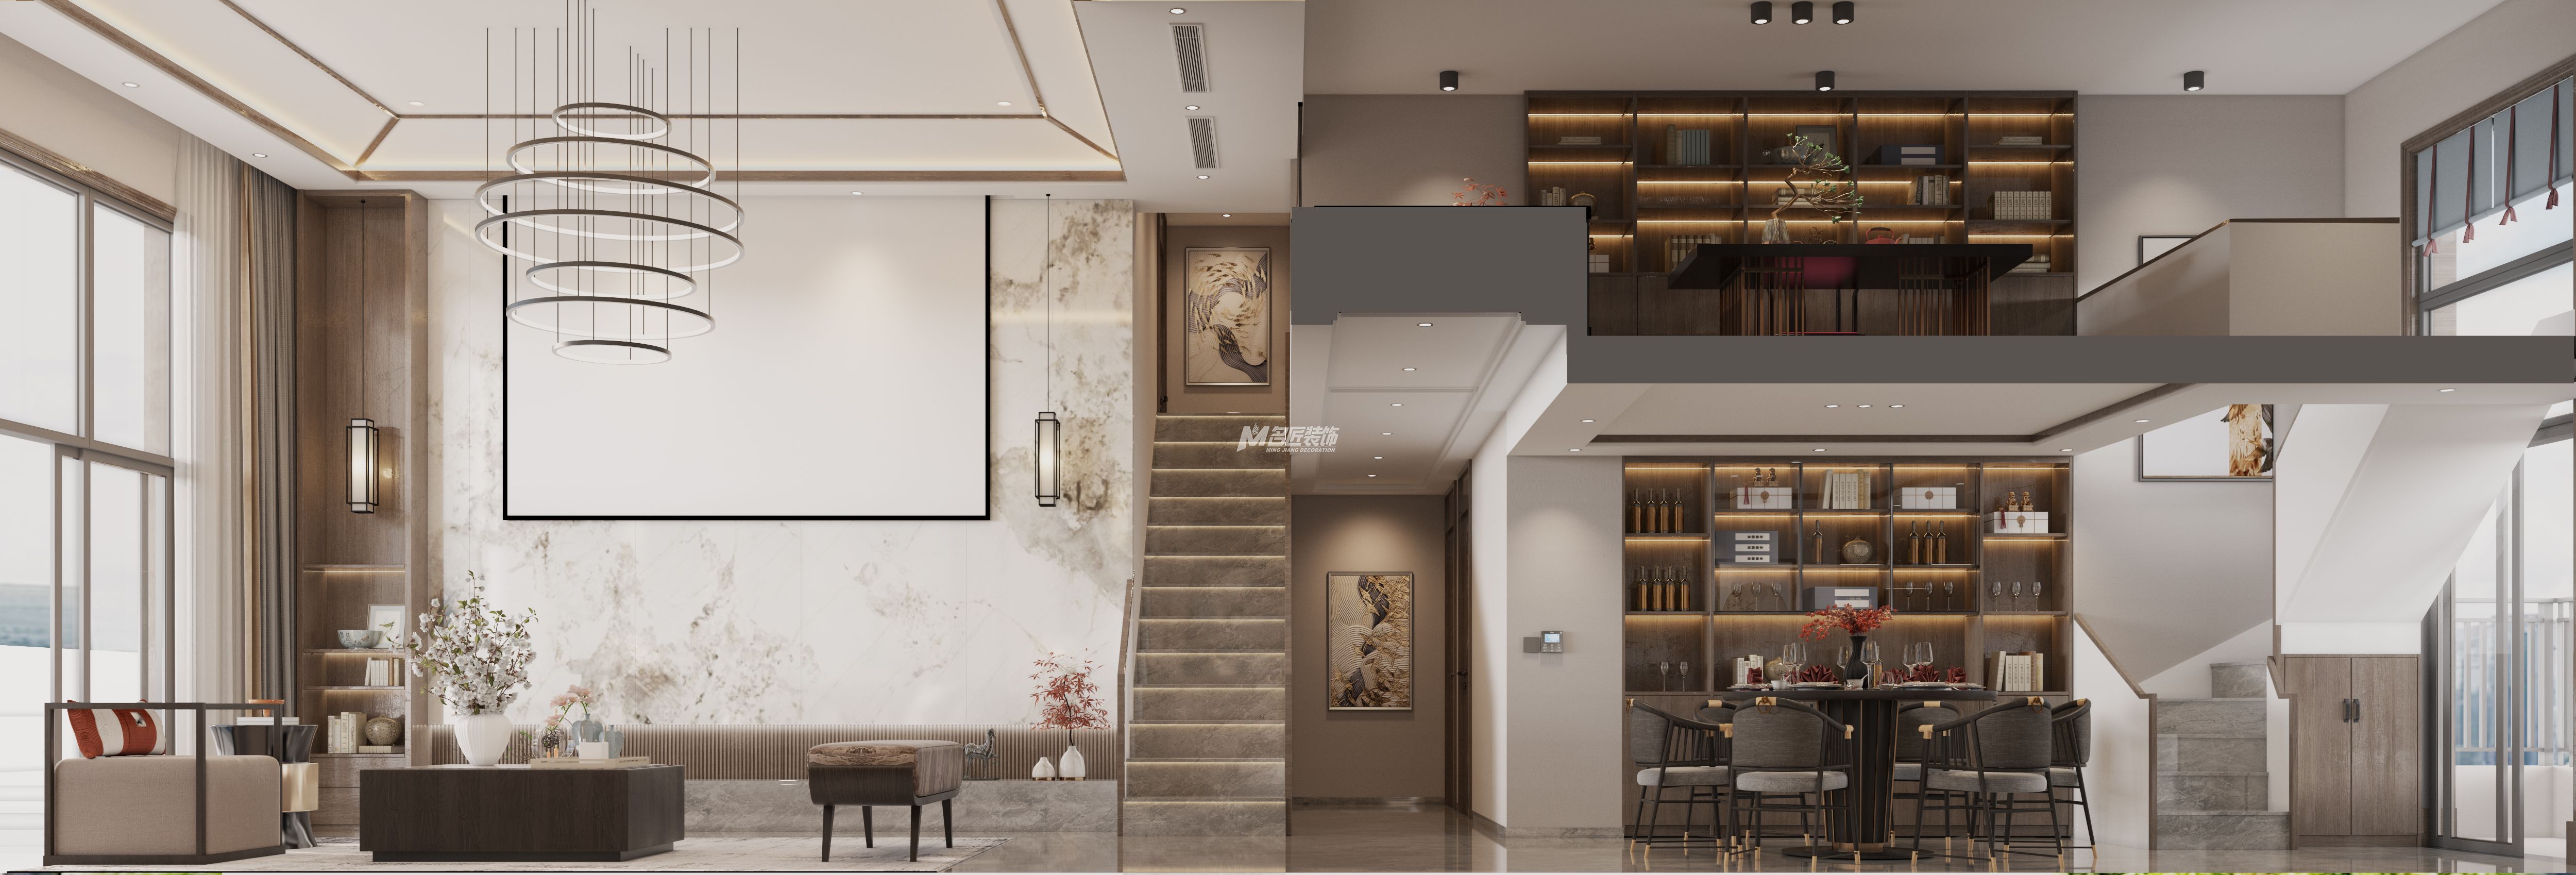 安吉山语城500㎡客餐厅新中式装修风格效果图